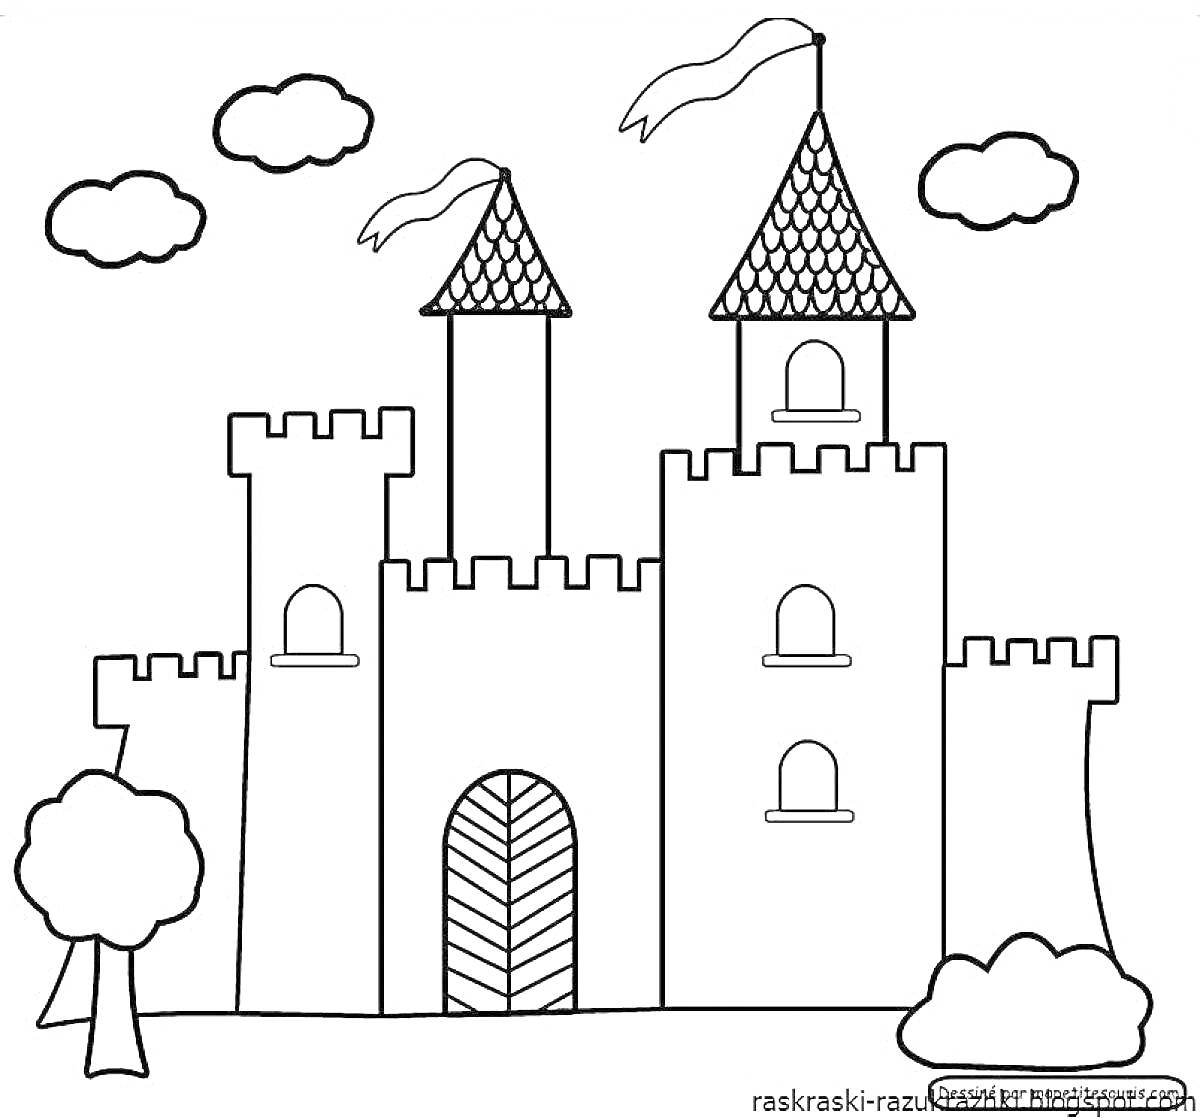 Раскраска Замок с башнями и флагами, три облака, три дерева, ворота